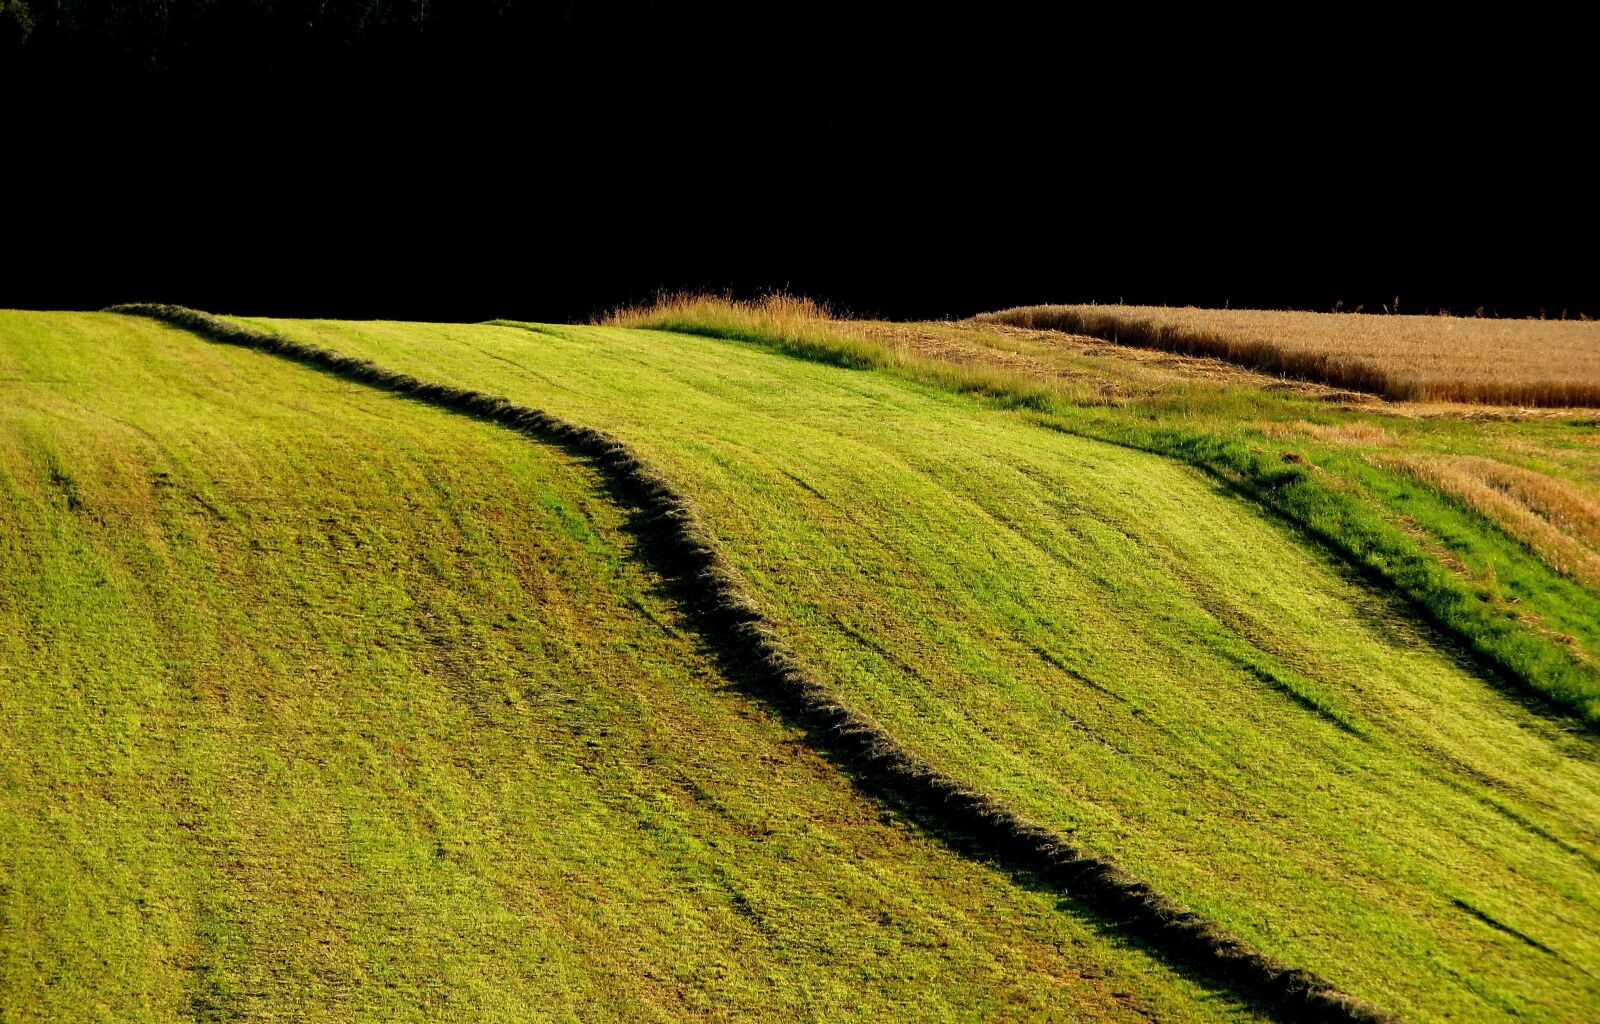 Canon PowerShot SX280 HS sample photo. Meadow, austria, landscape photography